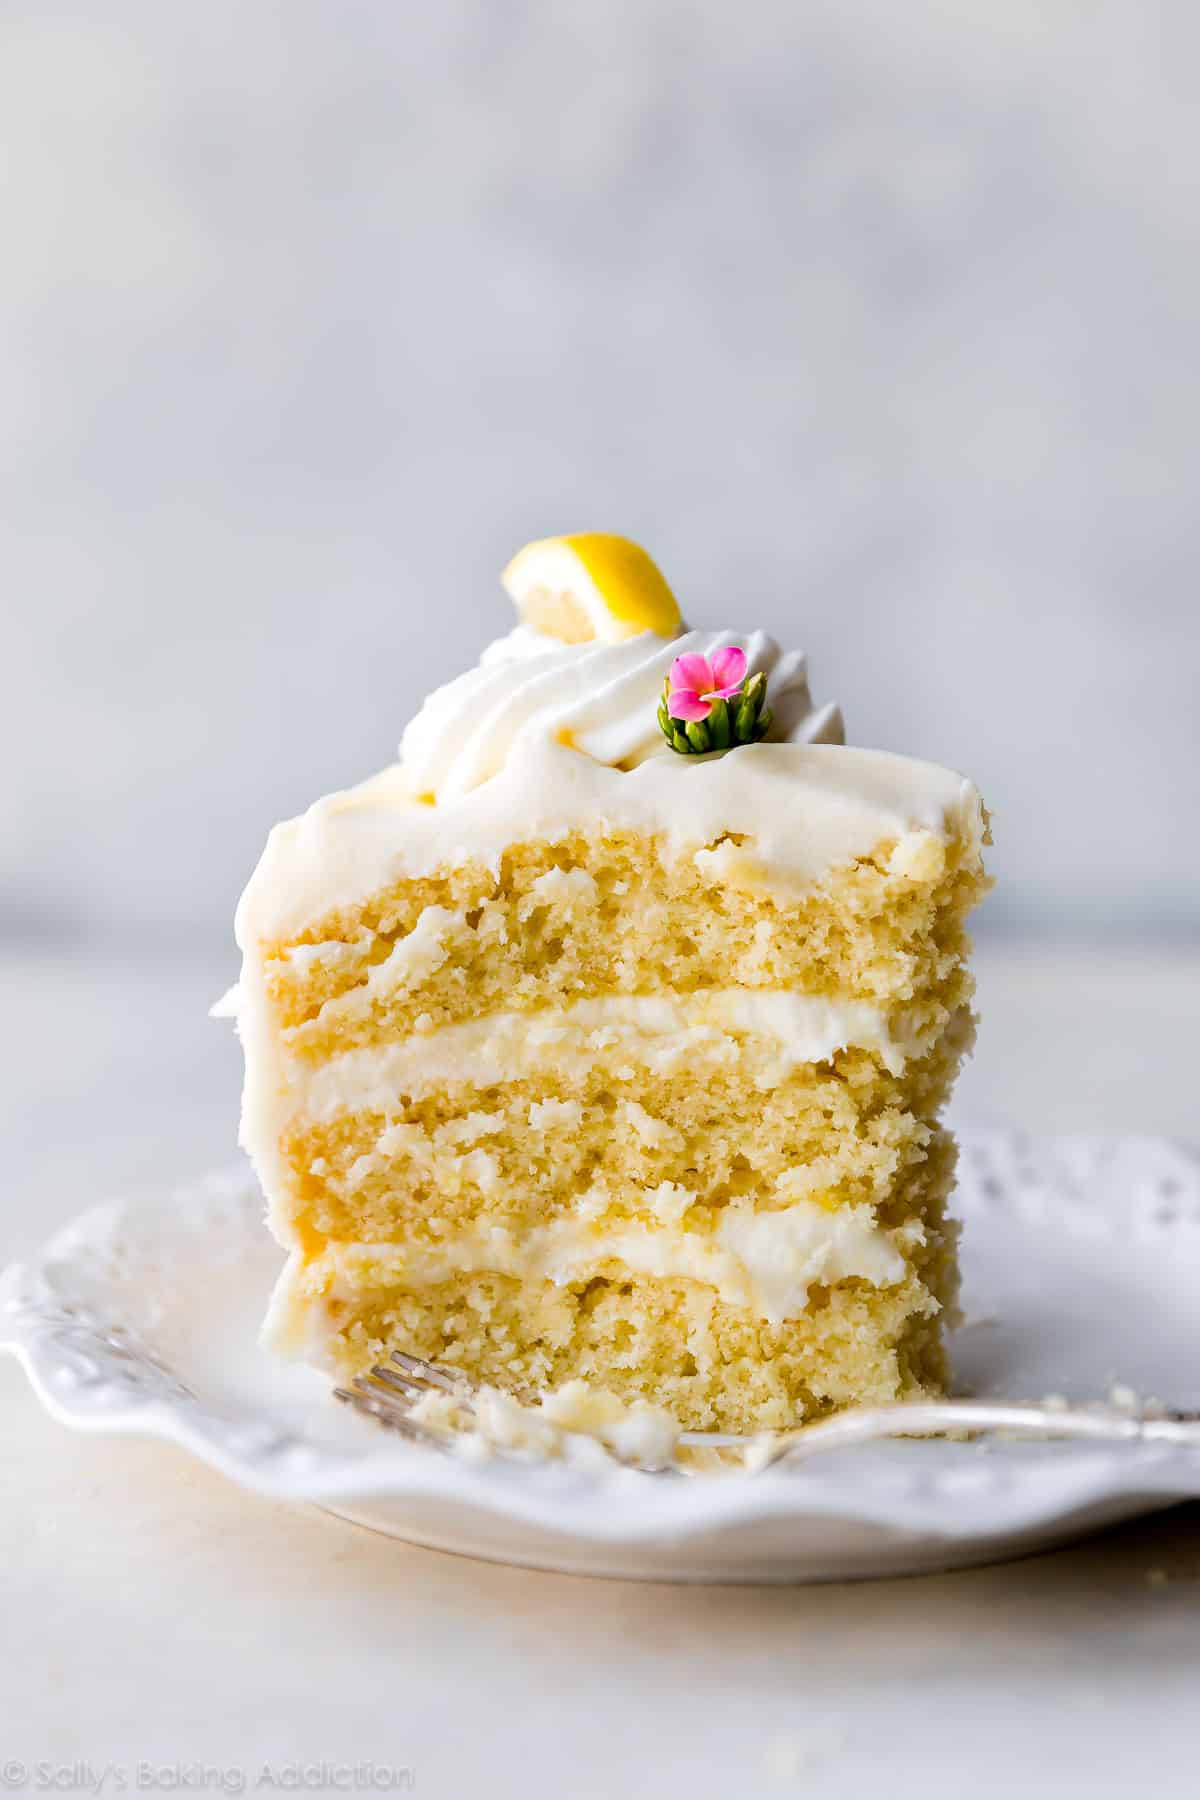 slice of lemon cake on a white plate